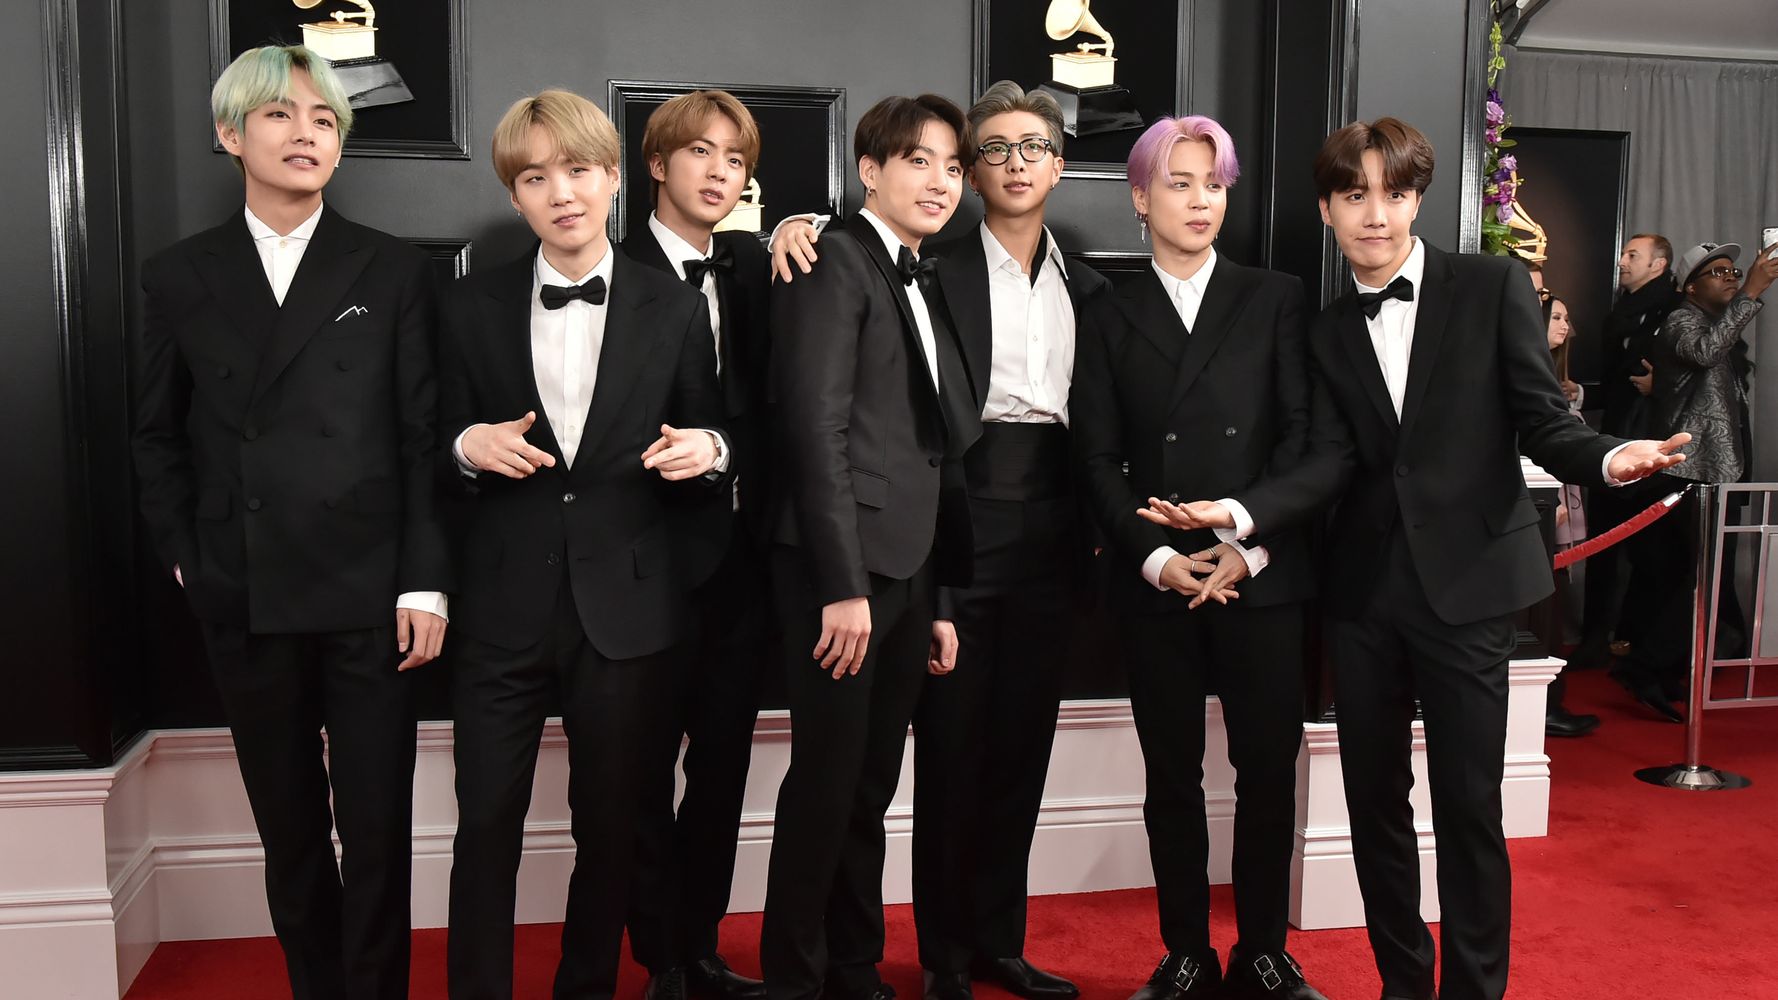 BTS Grammys Red Carpet 2019 Photos